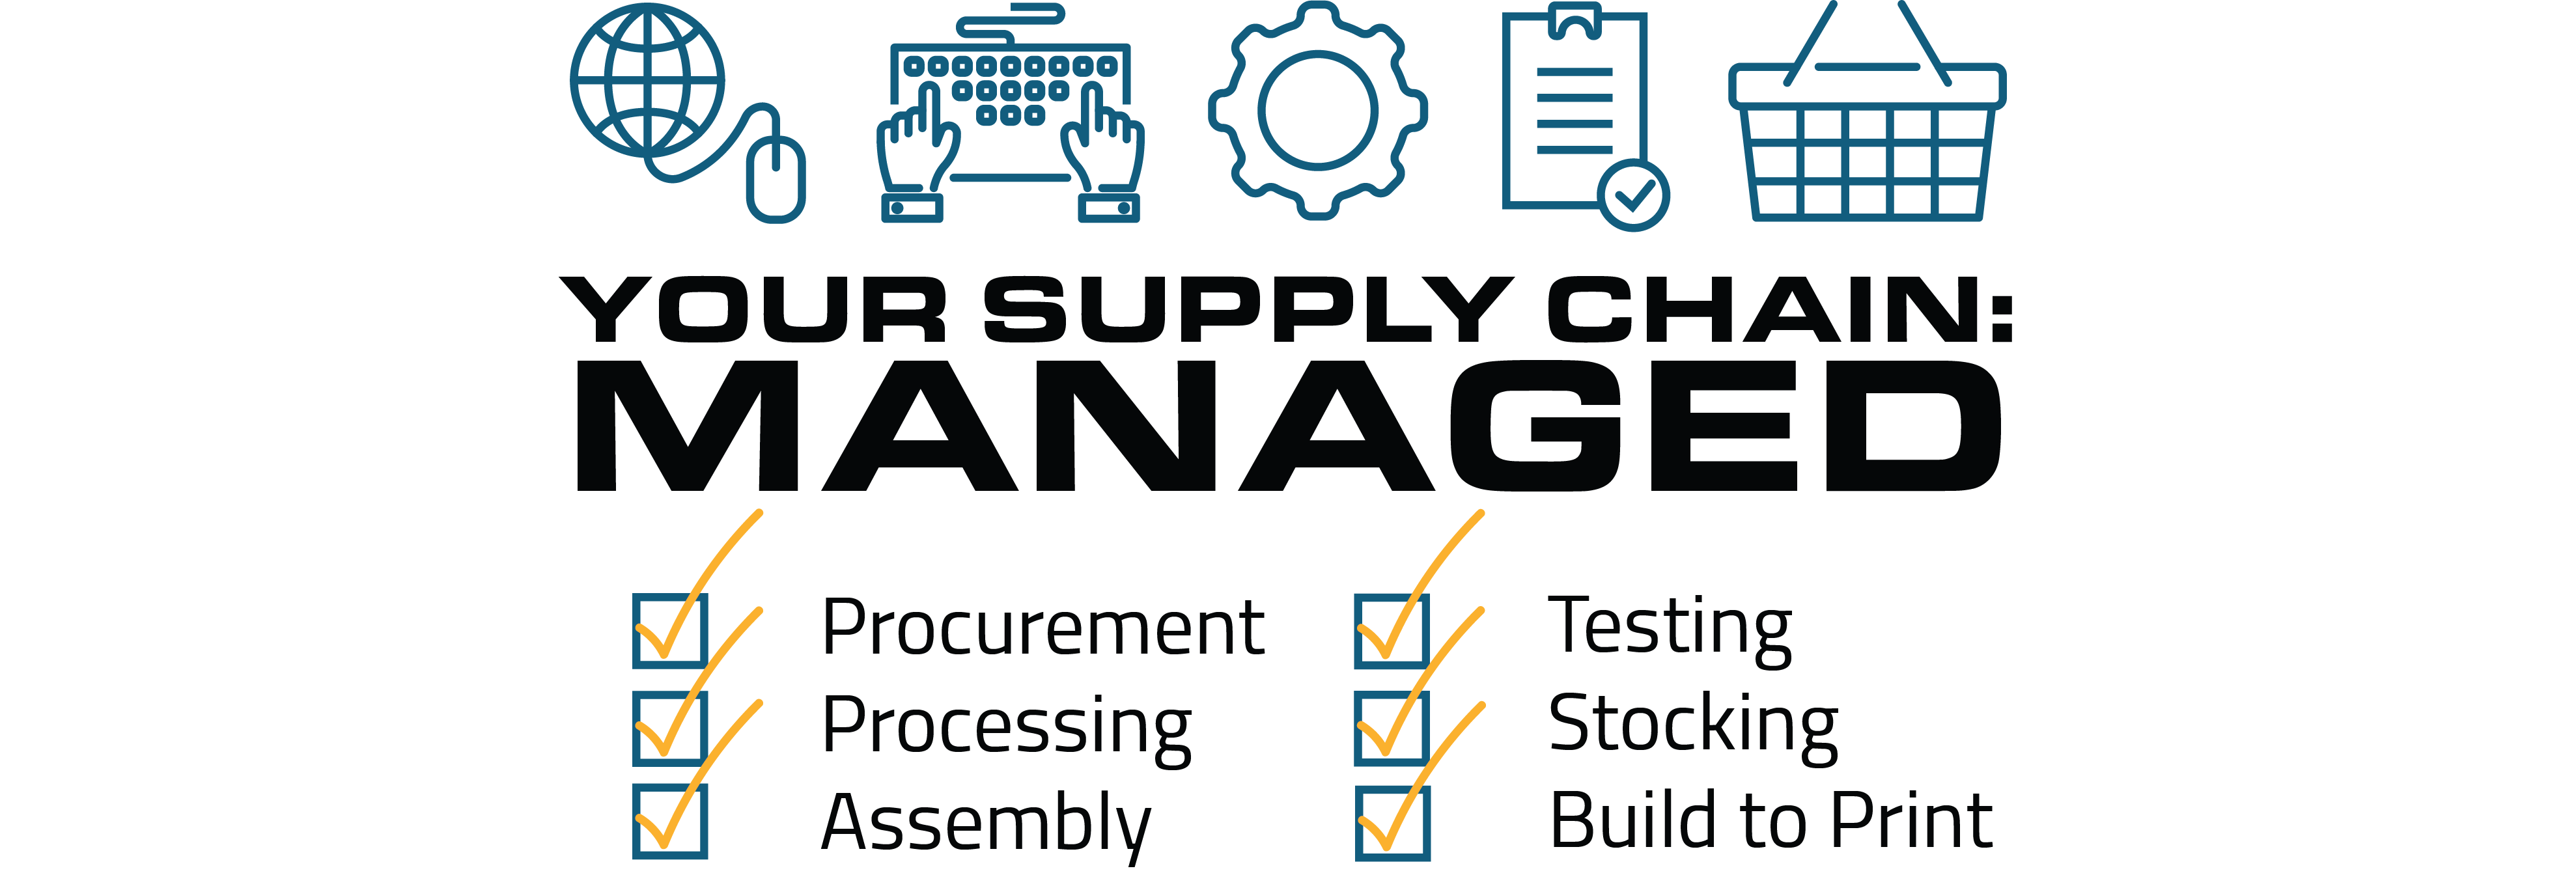 Supply chain checklist